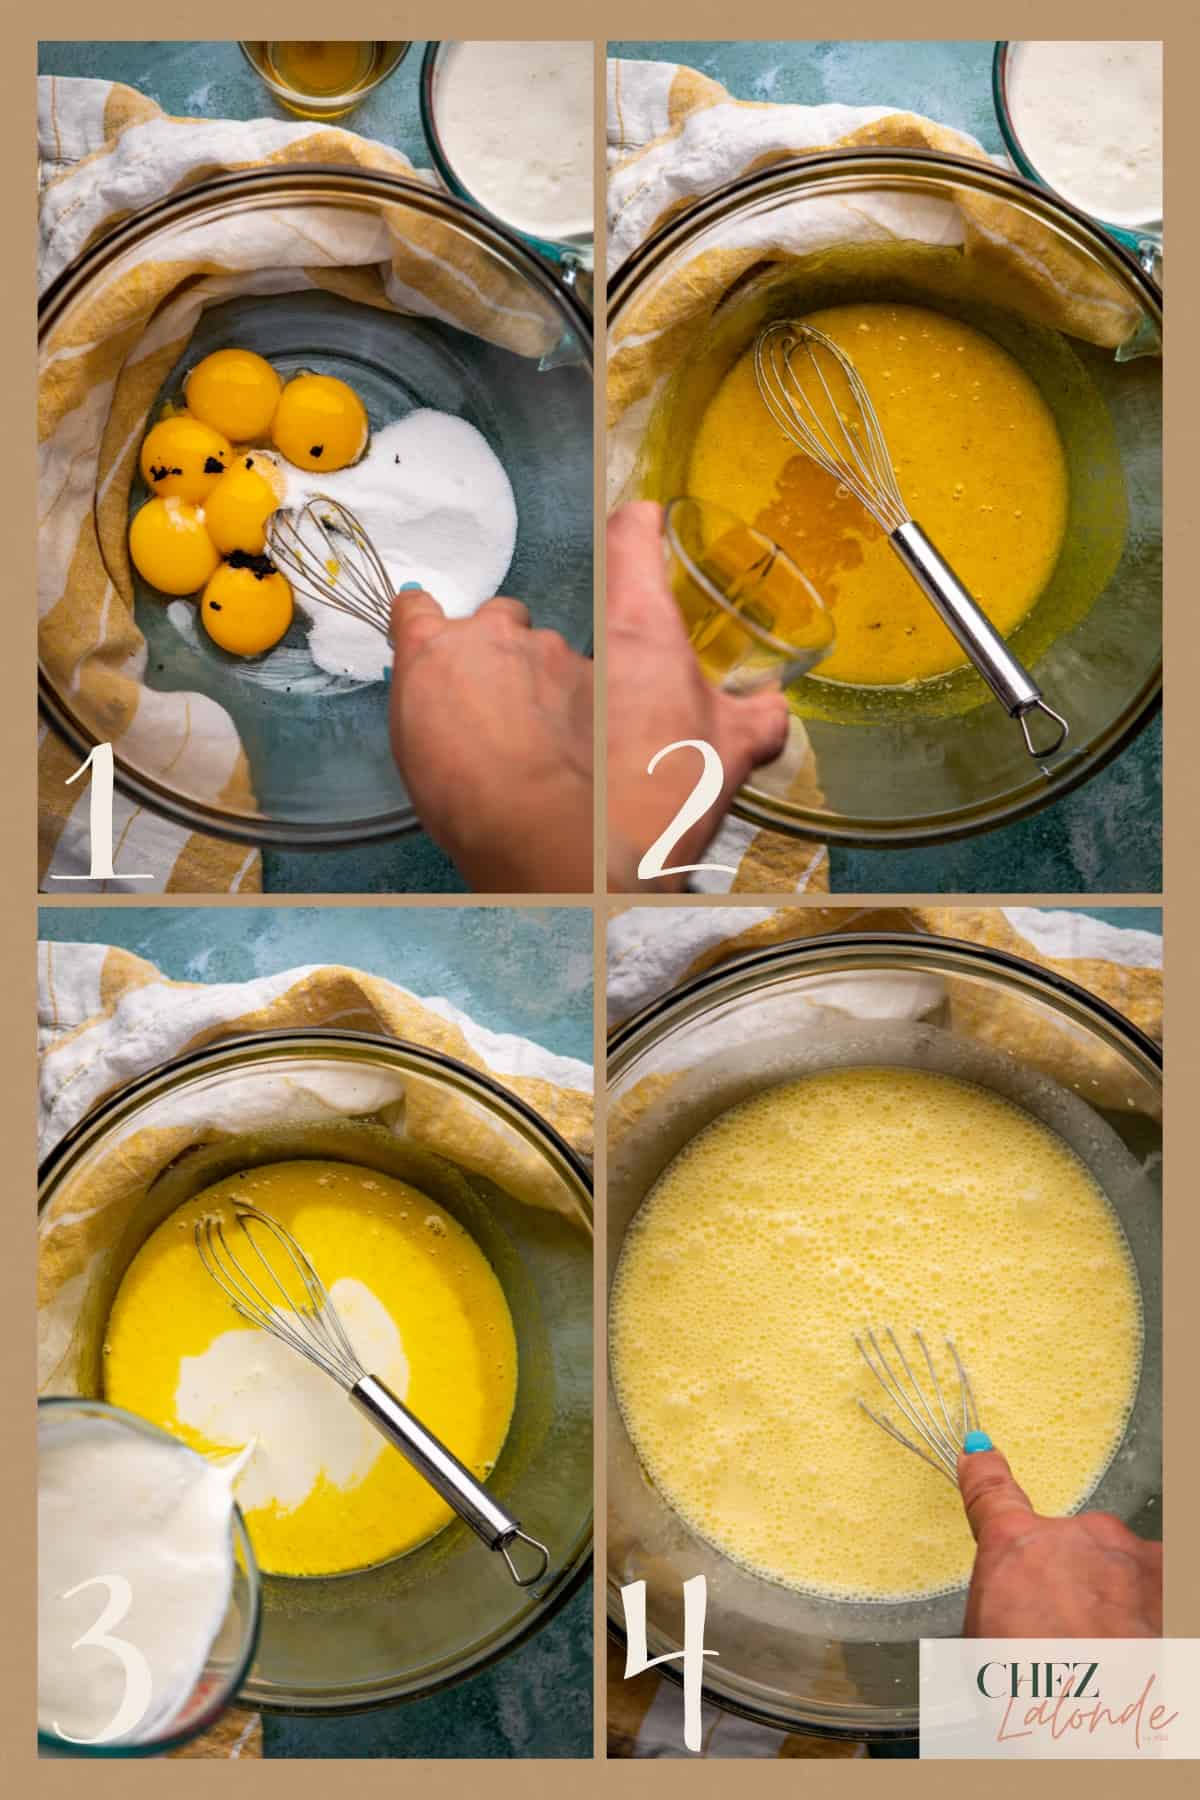 4 steps on making creme brulee batter. 